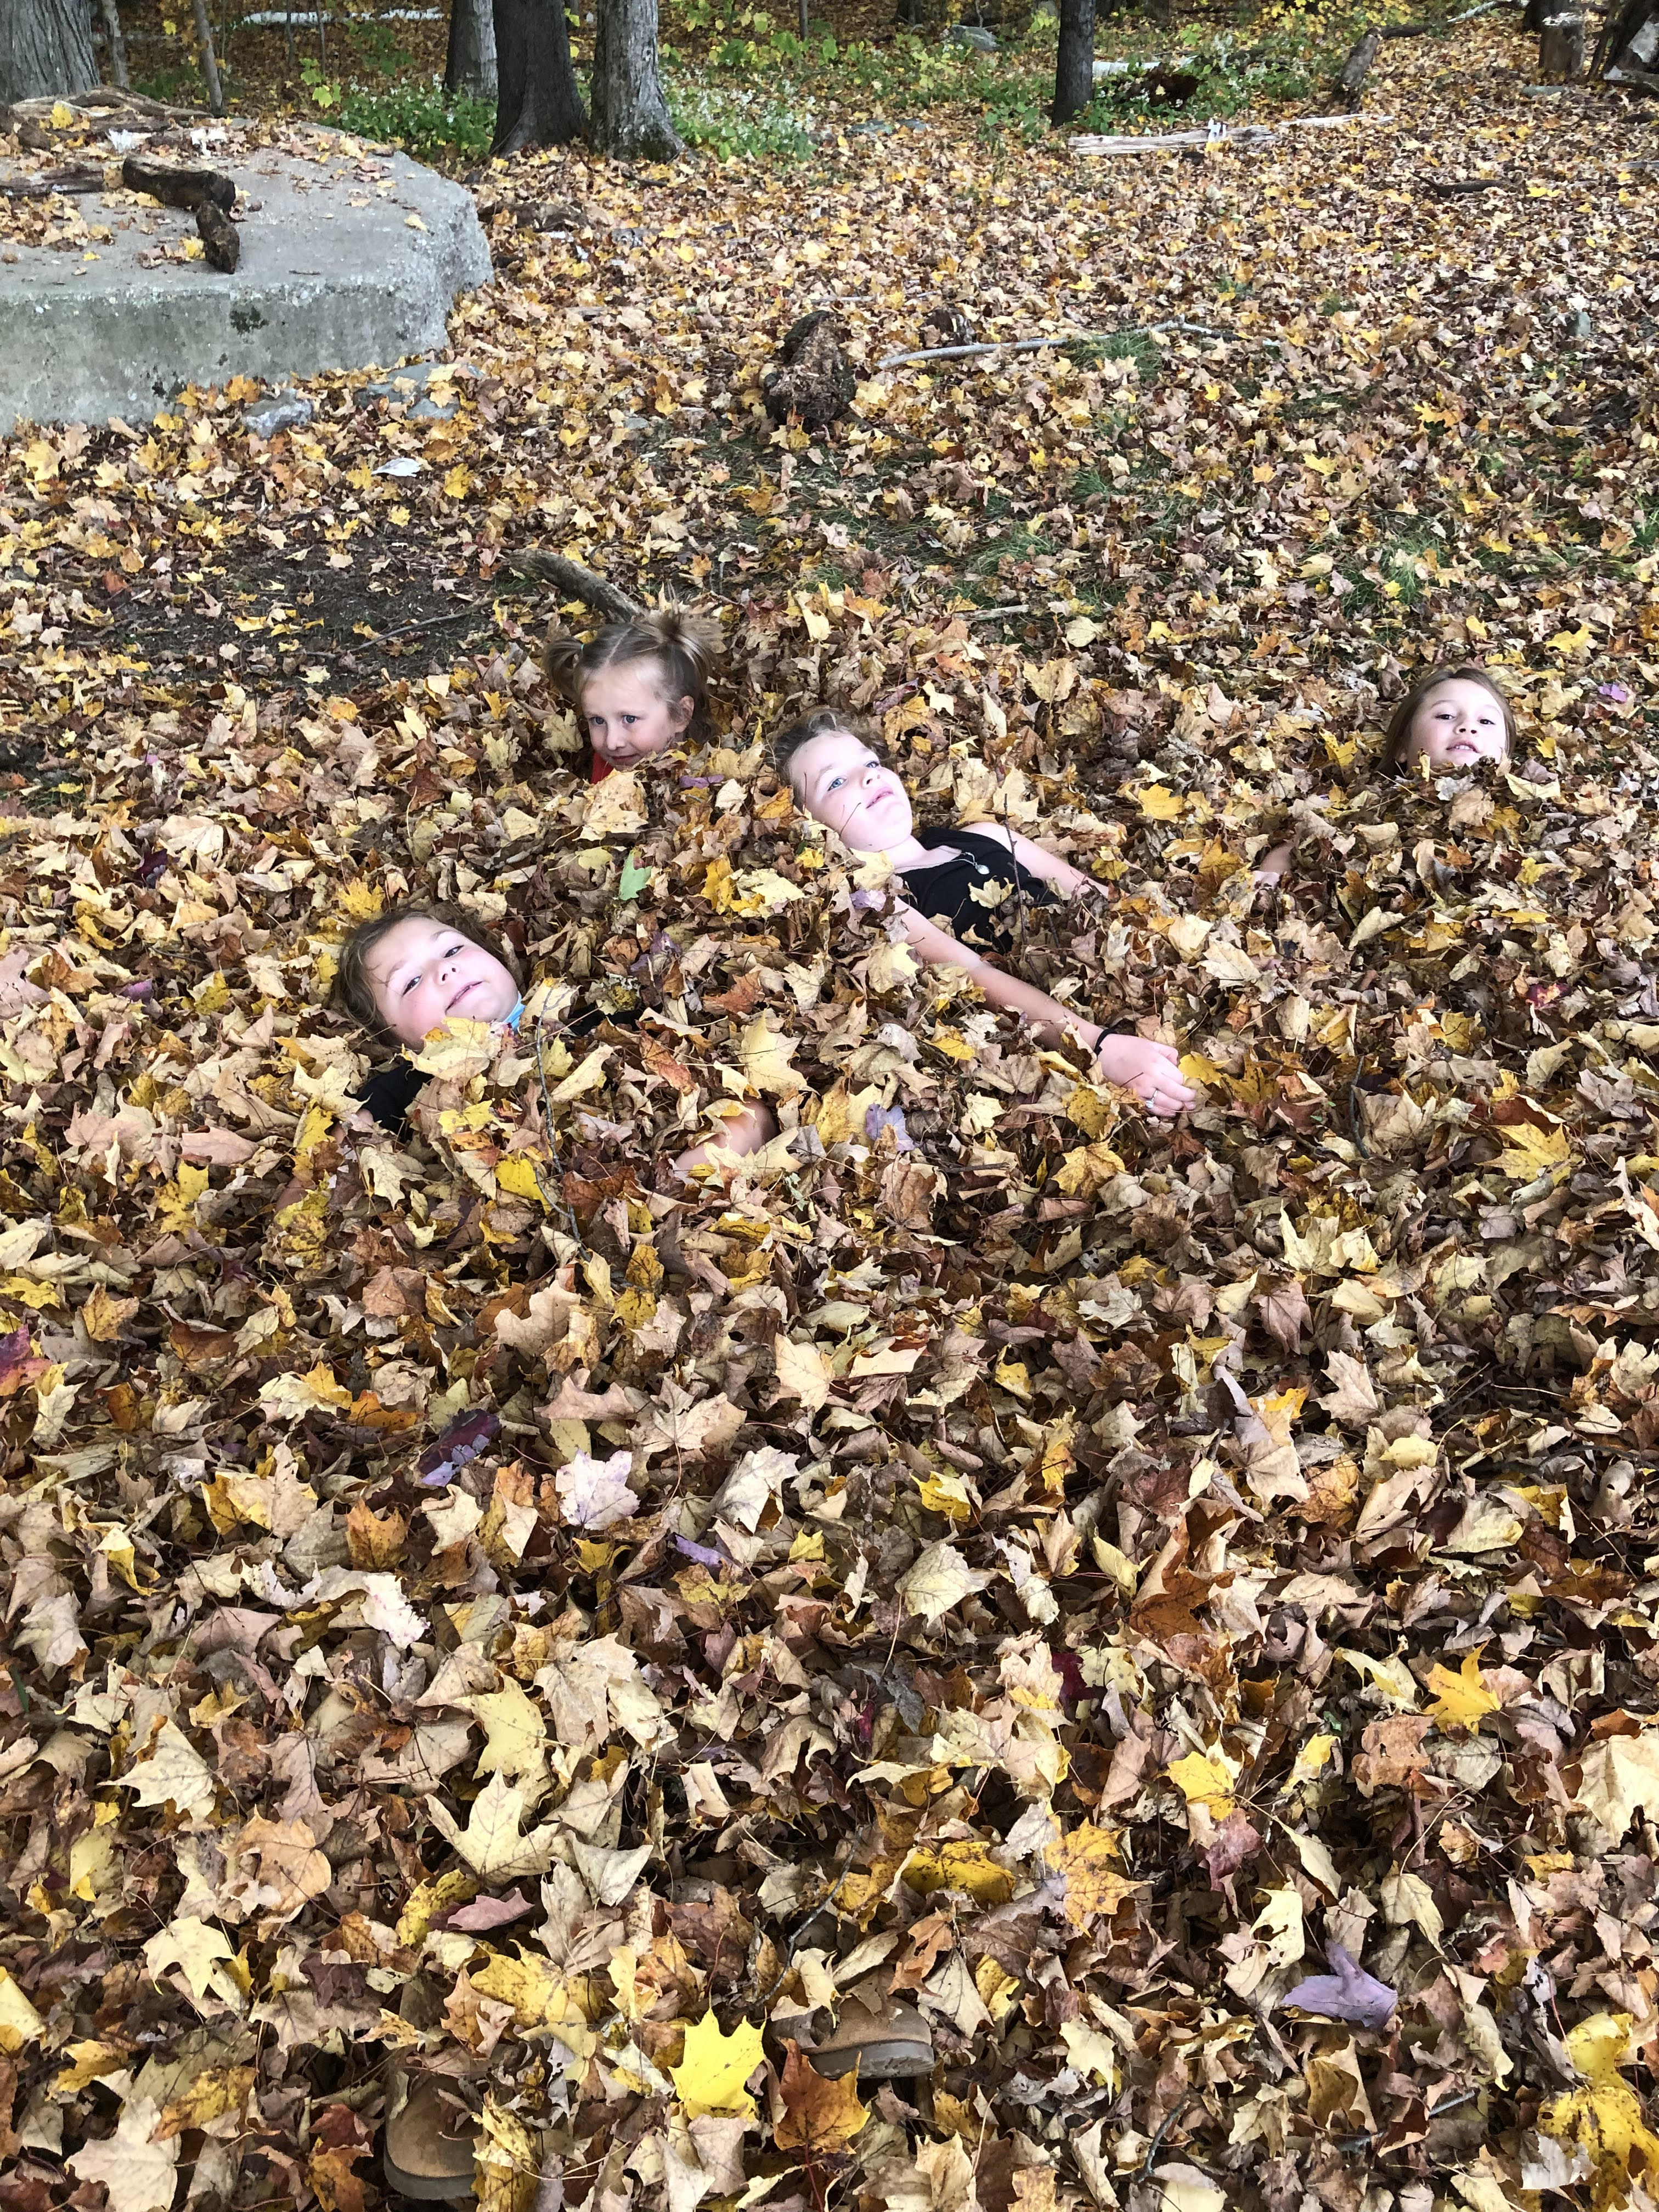 Children in leaves